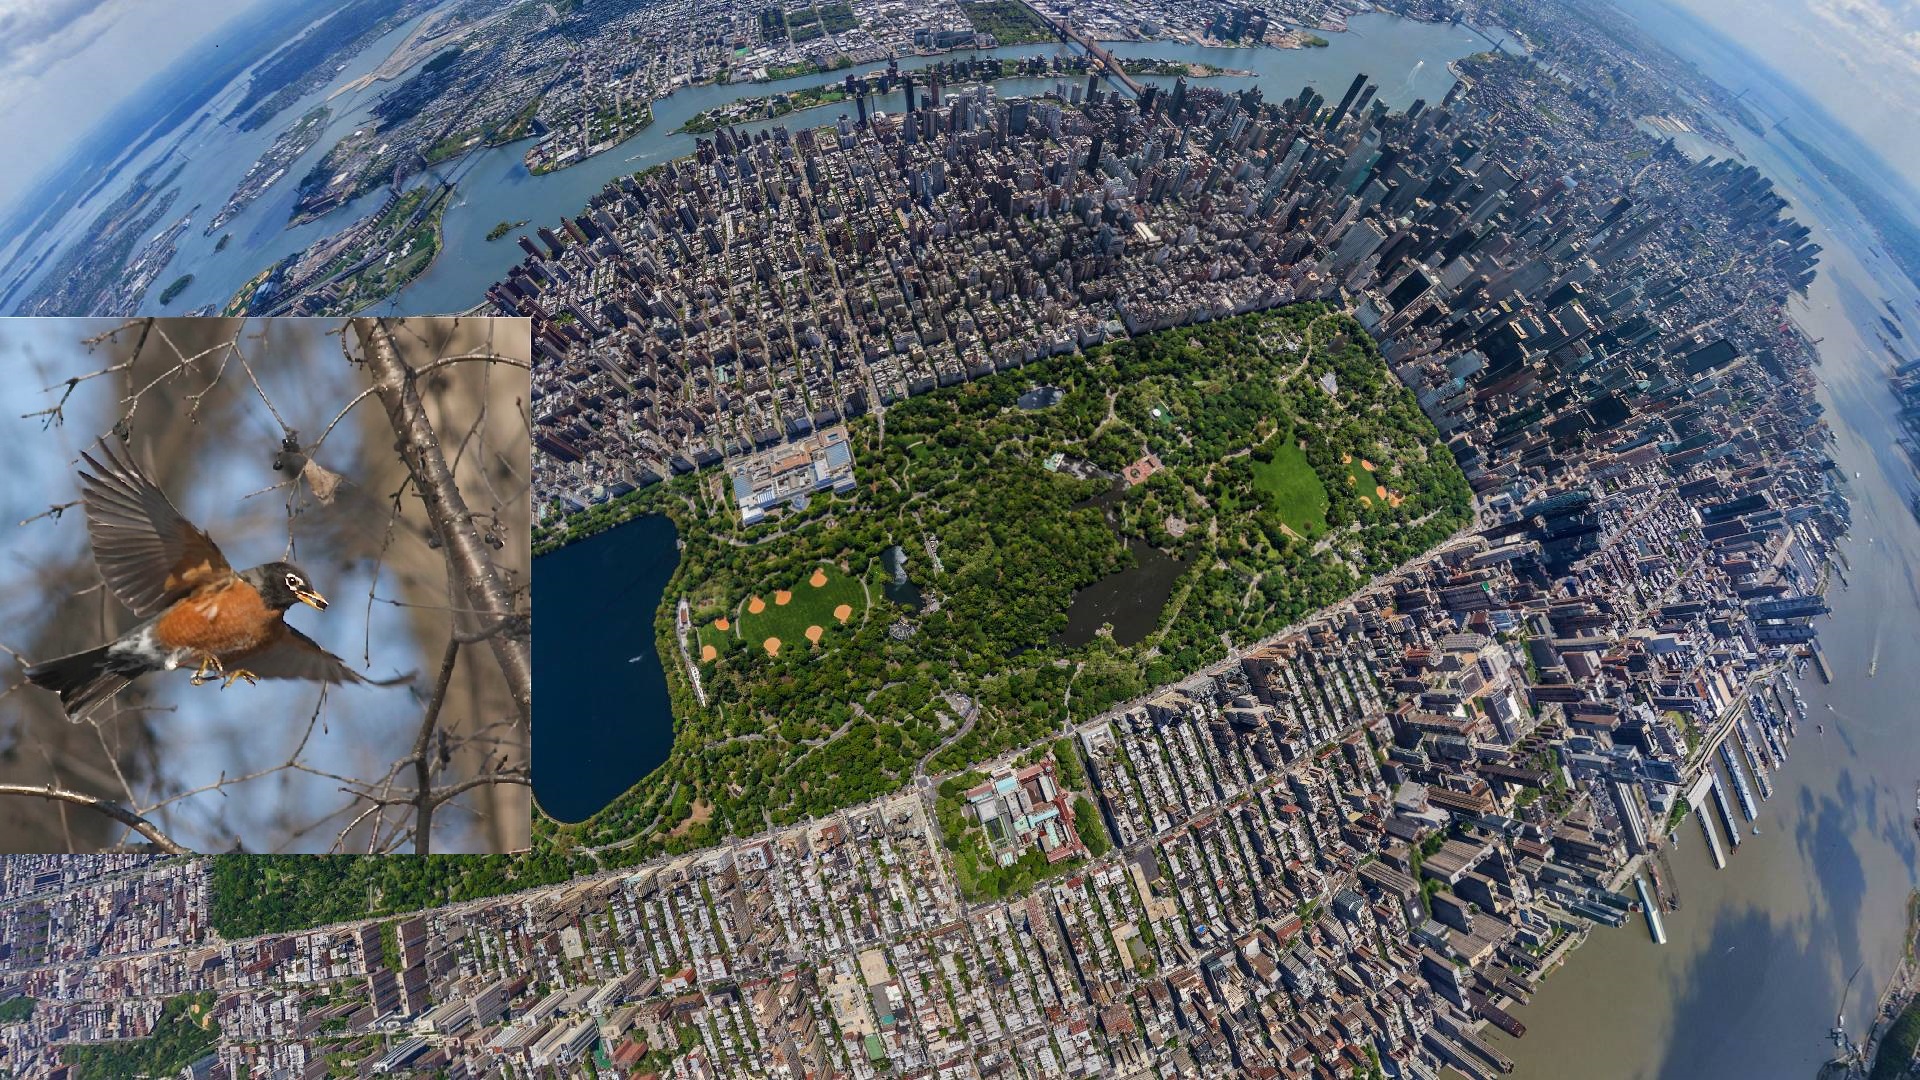 Frühjahrswanderung ist im vollen Gange – Der Central Park wird zum Paradies für Vogelfans